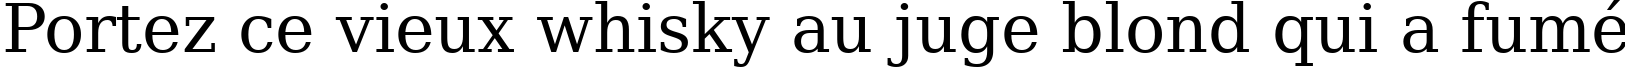 Пример написания шрифтом ae_Hani текста на французском